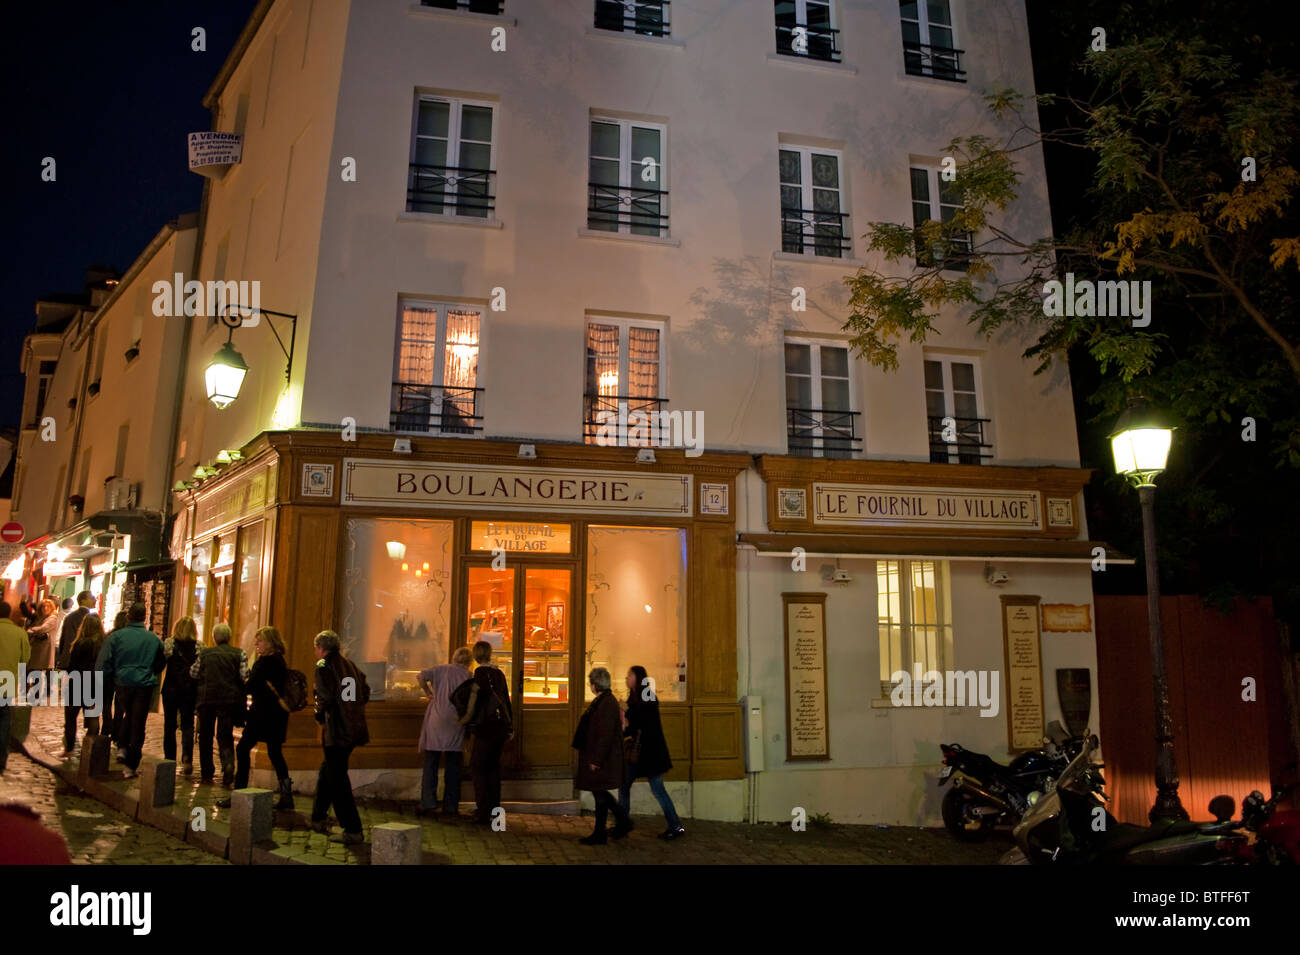 Paris, France, Street Scene, personnes visitant le quartier de Montmartre, Vieux Bâtiment parisien la nuit, Vieille Boulangerie française, extérieur, boulangerie Banque D'Images